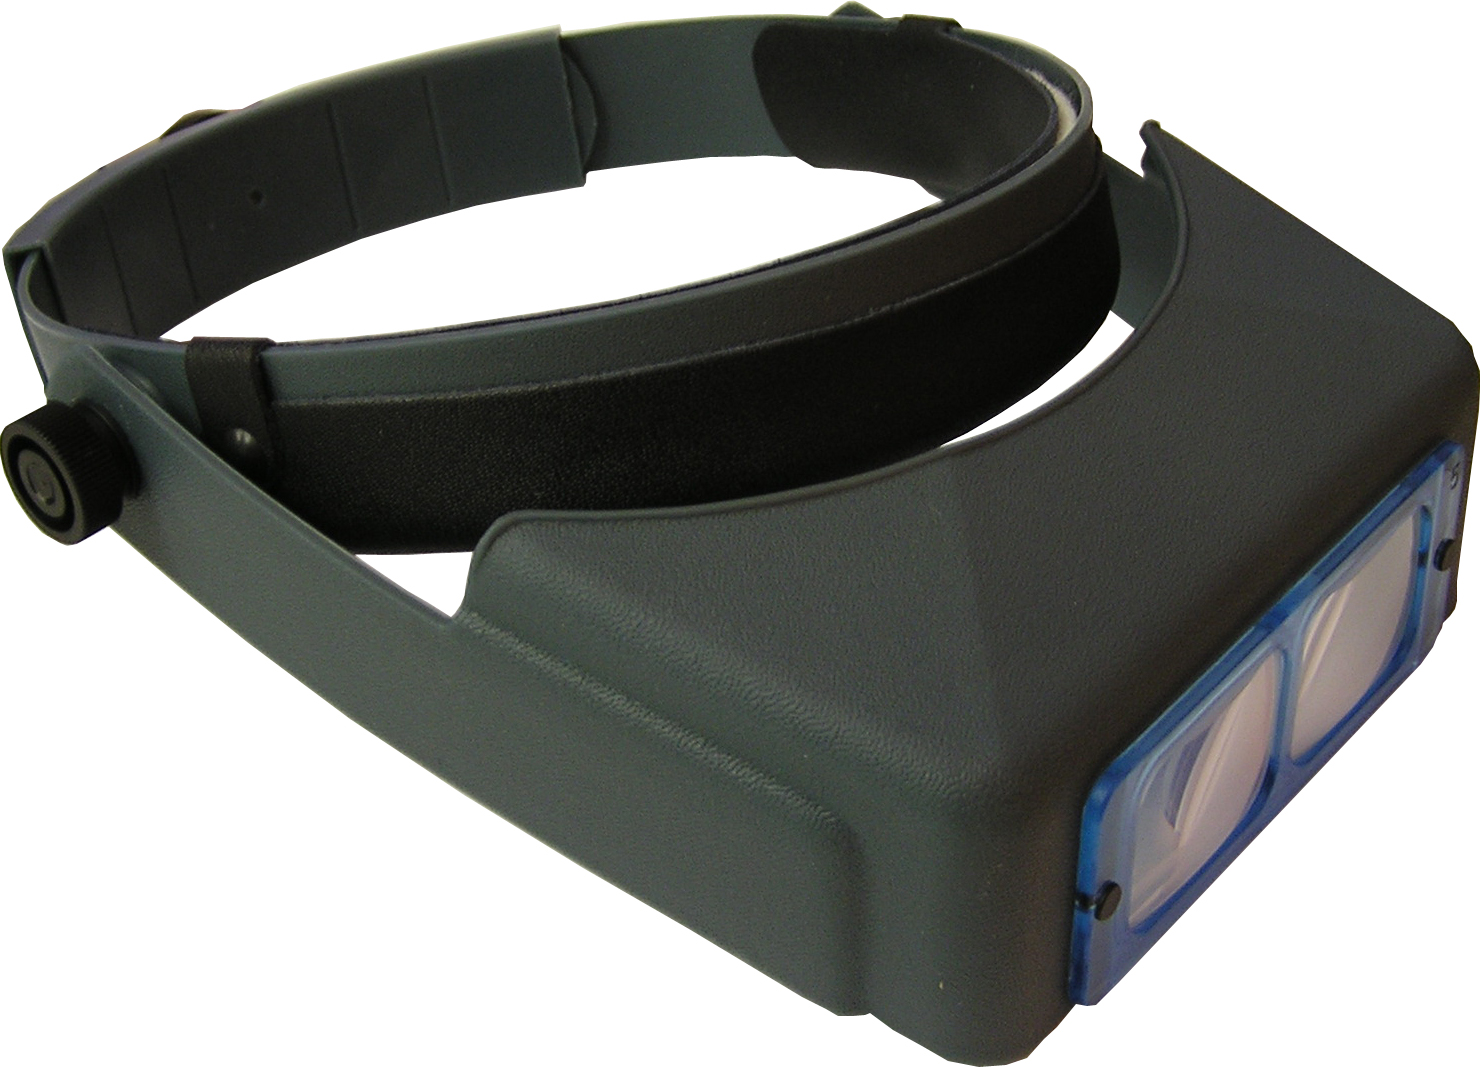 Kopfbandlupe - OptiVisor - 3,5x Vergrößerung